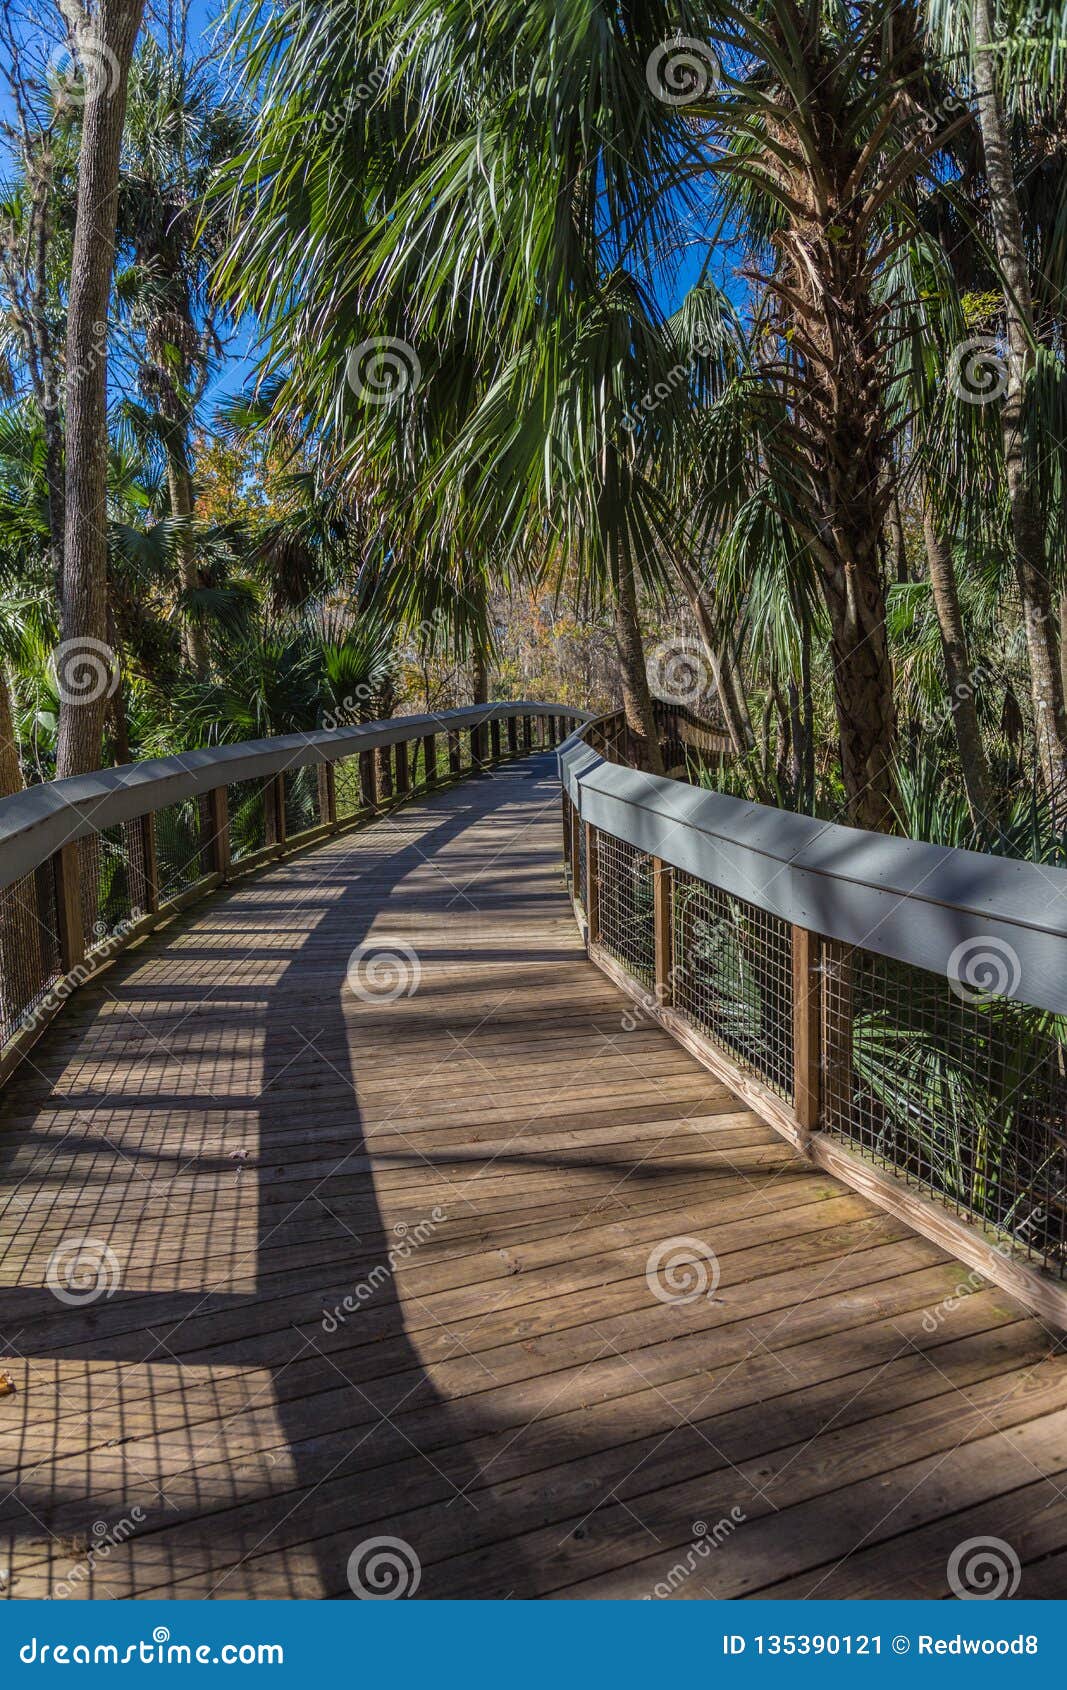 florida tropical boardwalk